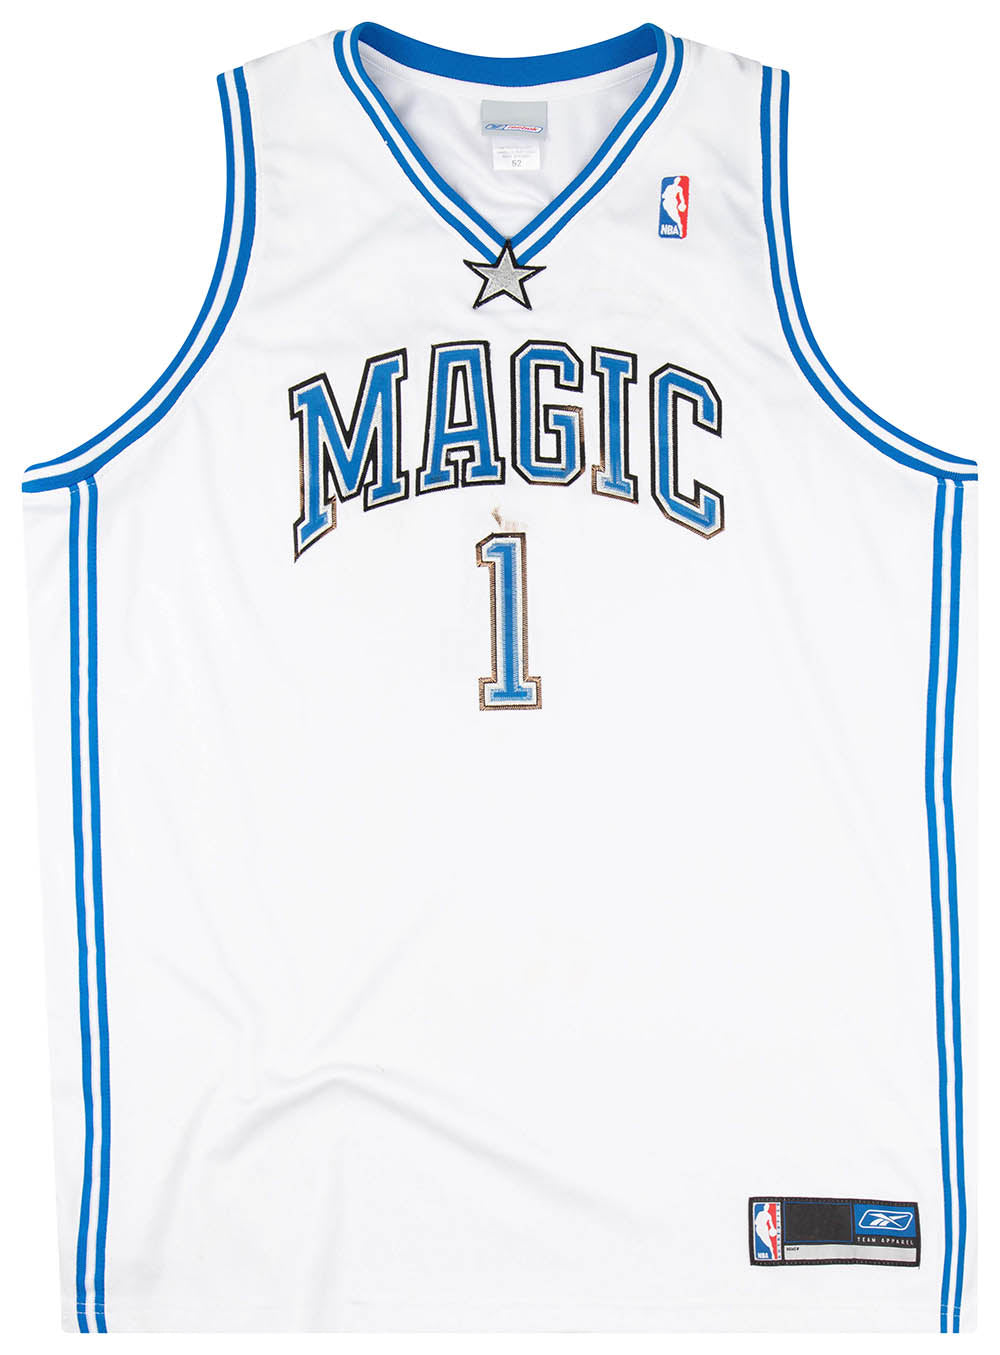 2022 Season McGrady #1 Orlando Magic City Edition NBA Jersey - Kitsociety